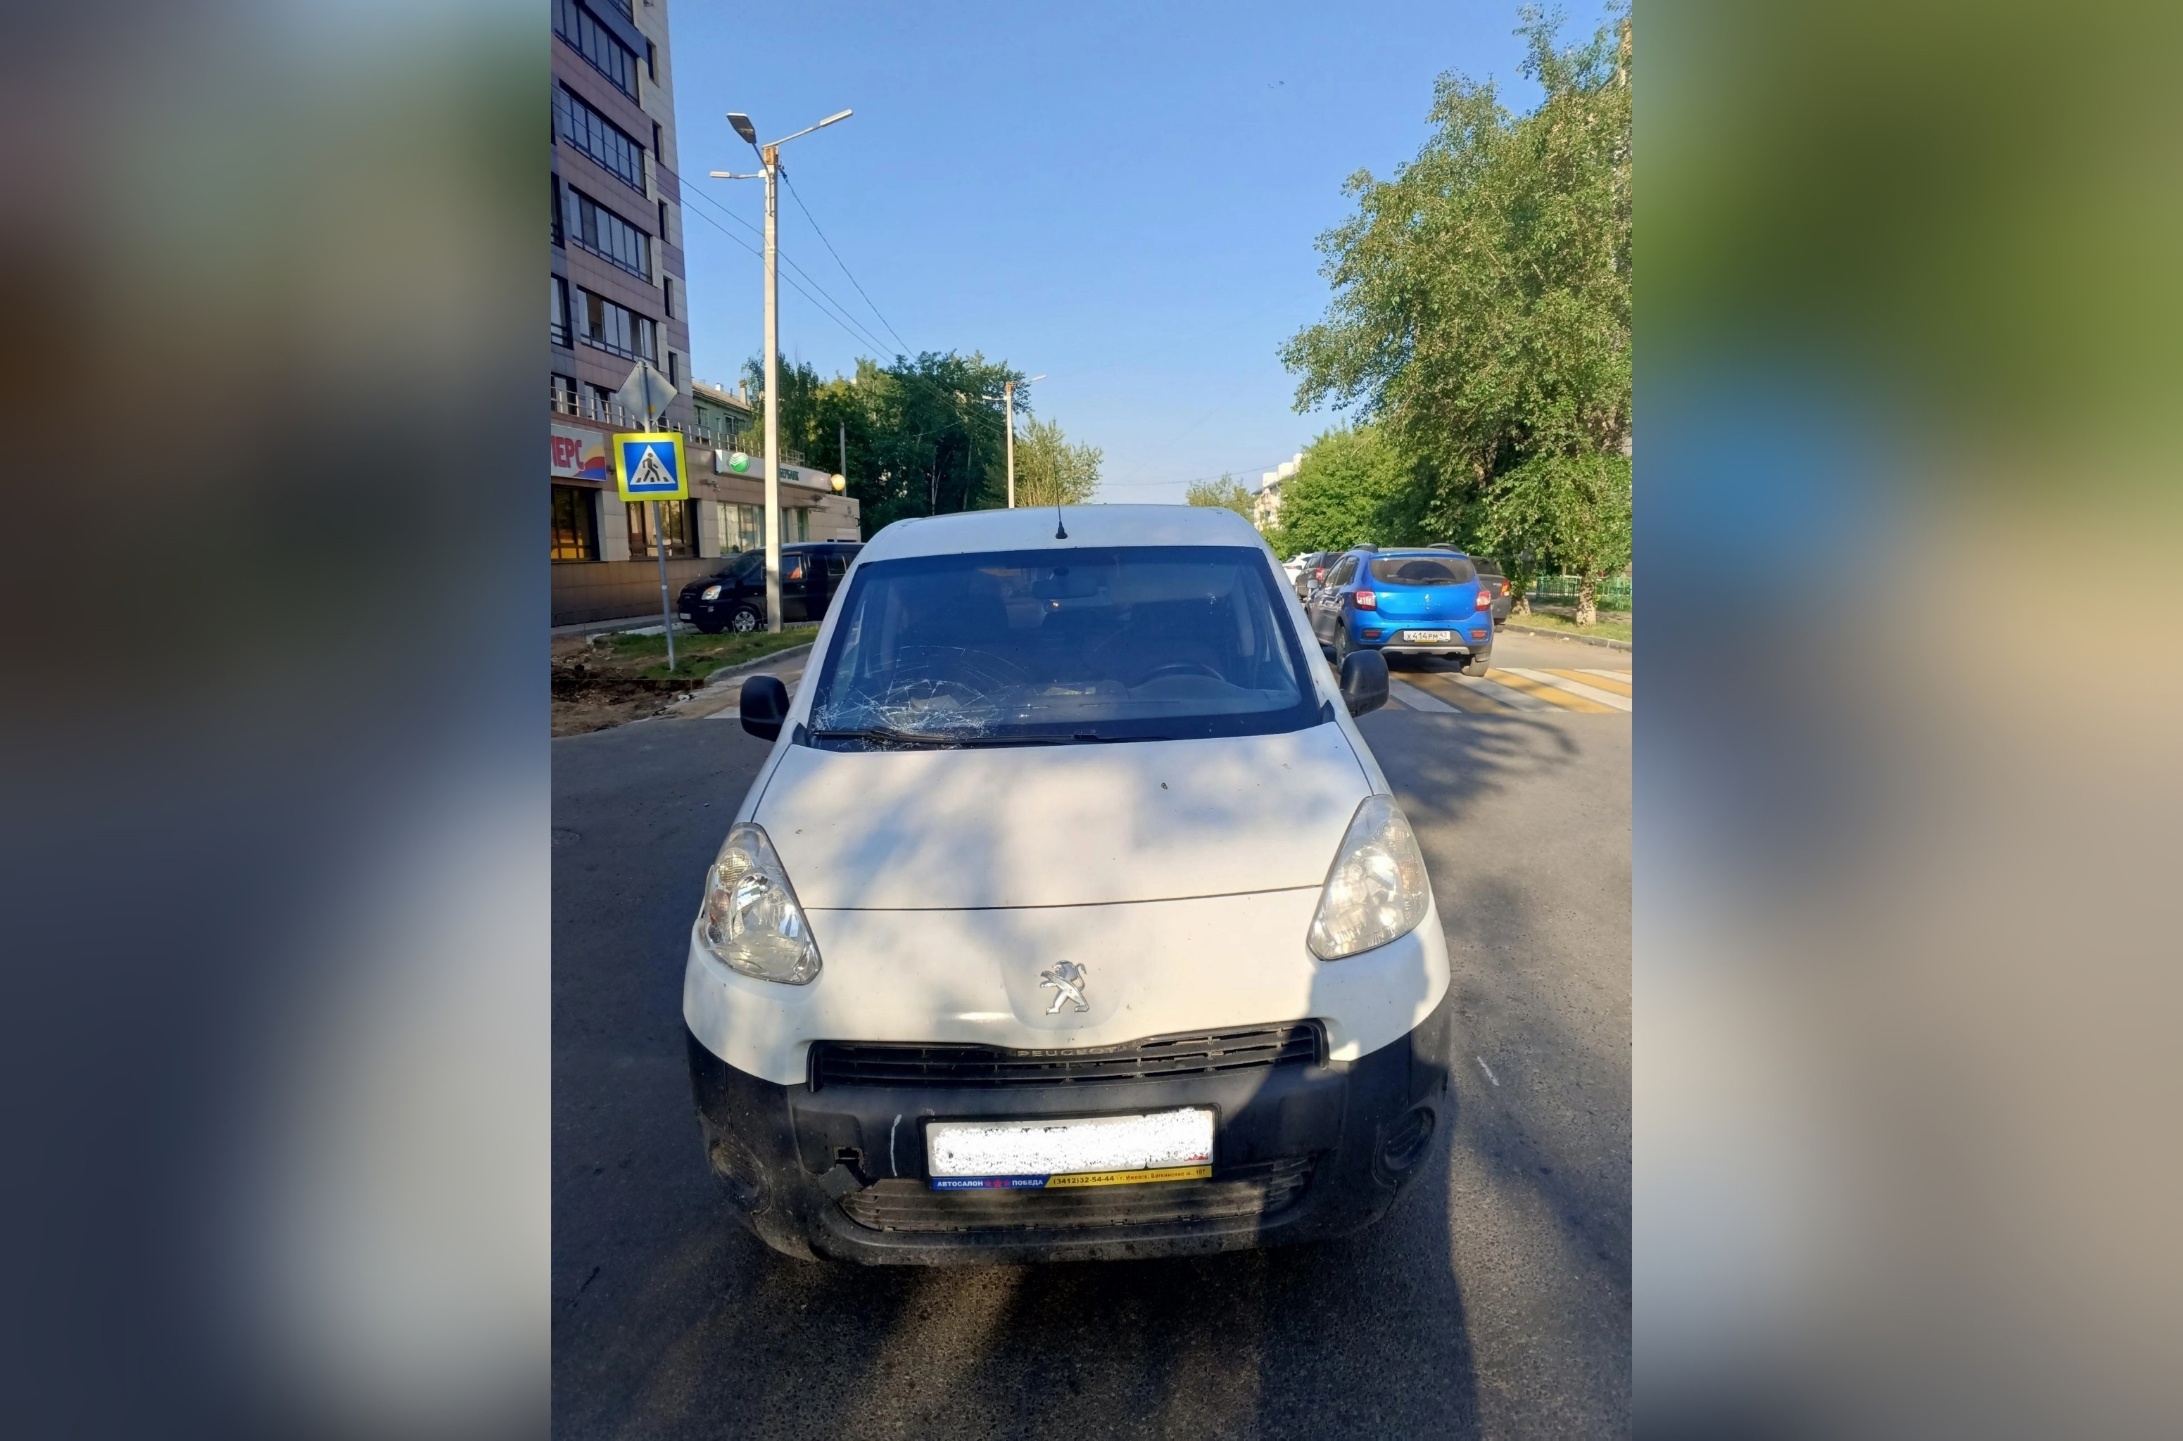 Кировская полиция разыскивает водителя, сбившего пешехода и бросившего машину